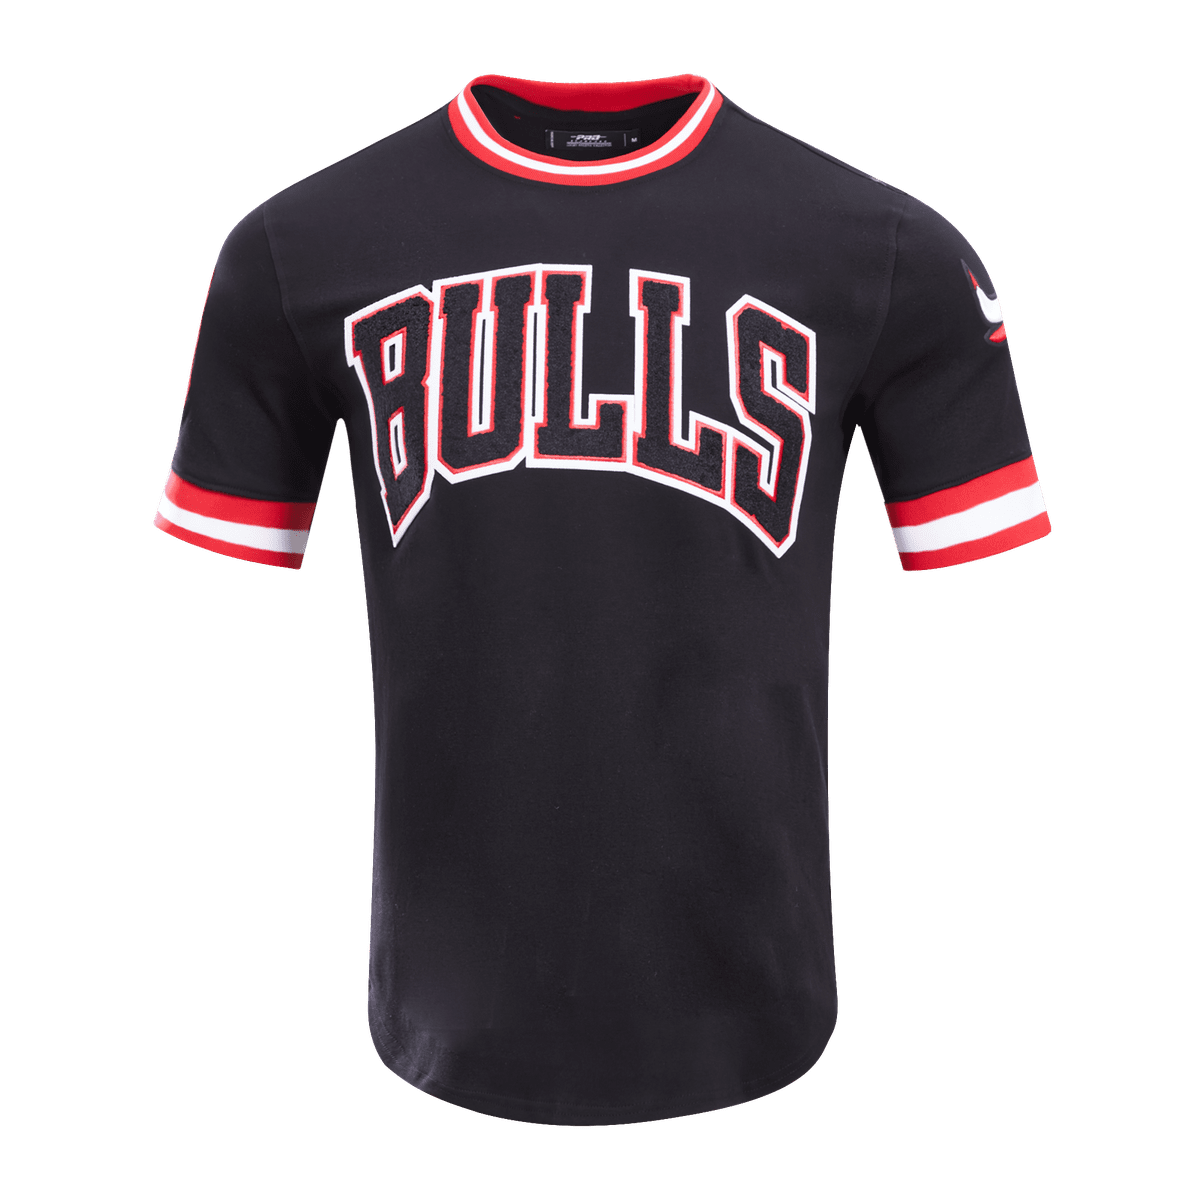 Pro Standard Men's St. Louis Cardinals Drip Logo Short Sleeve Tee